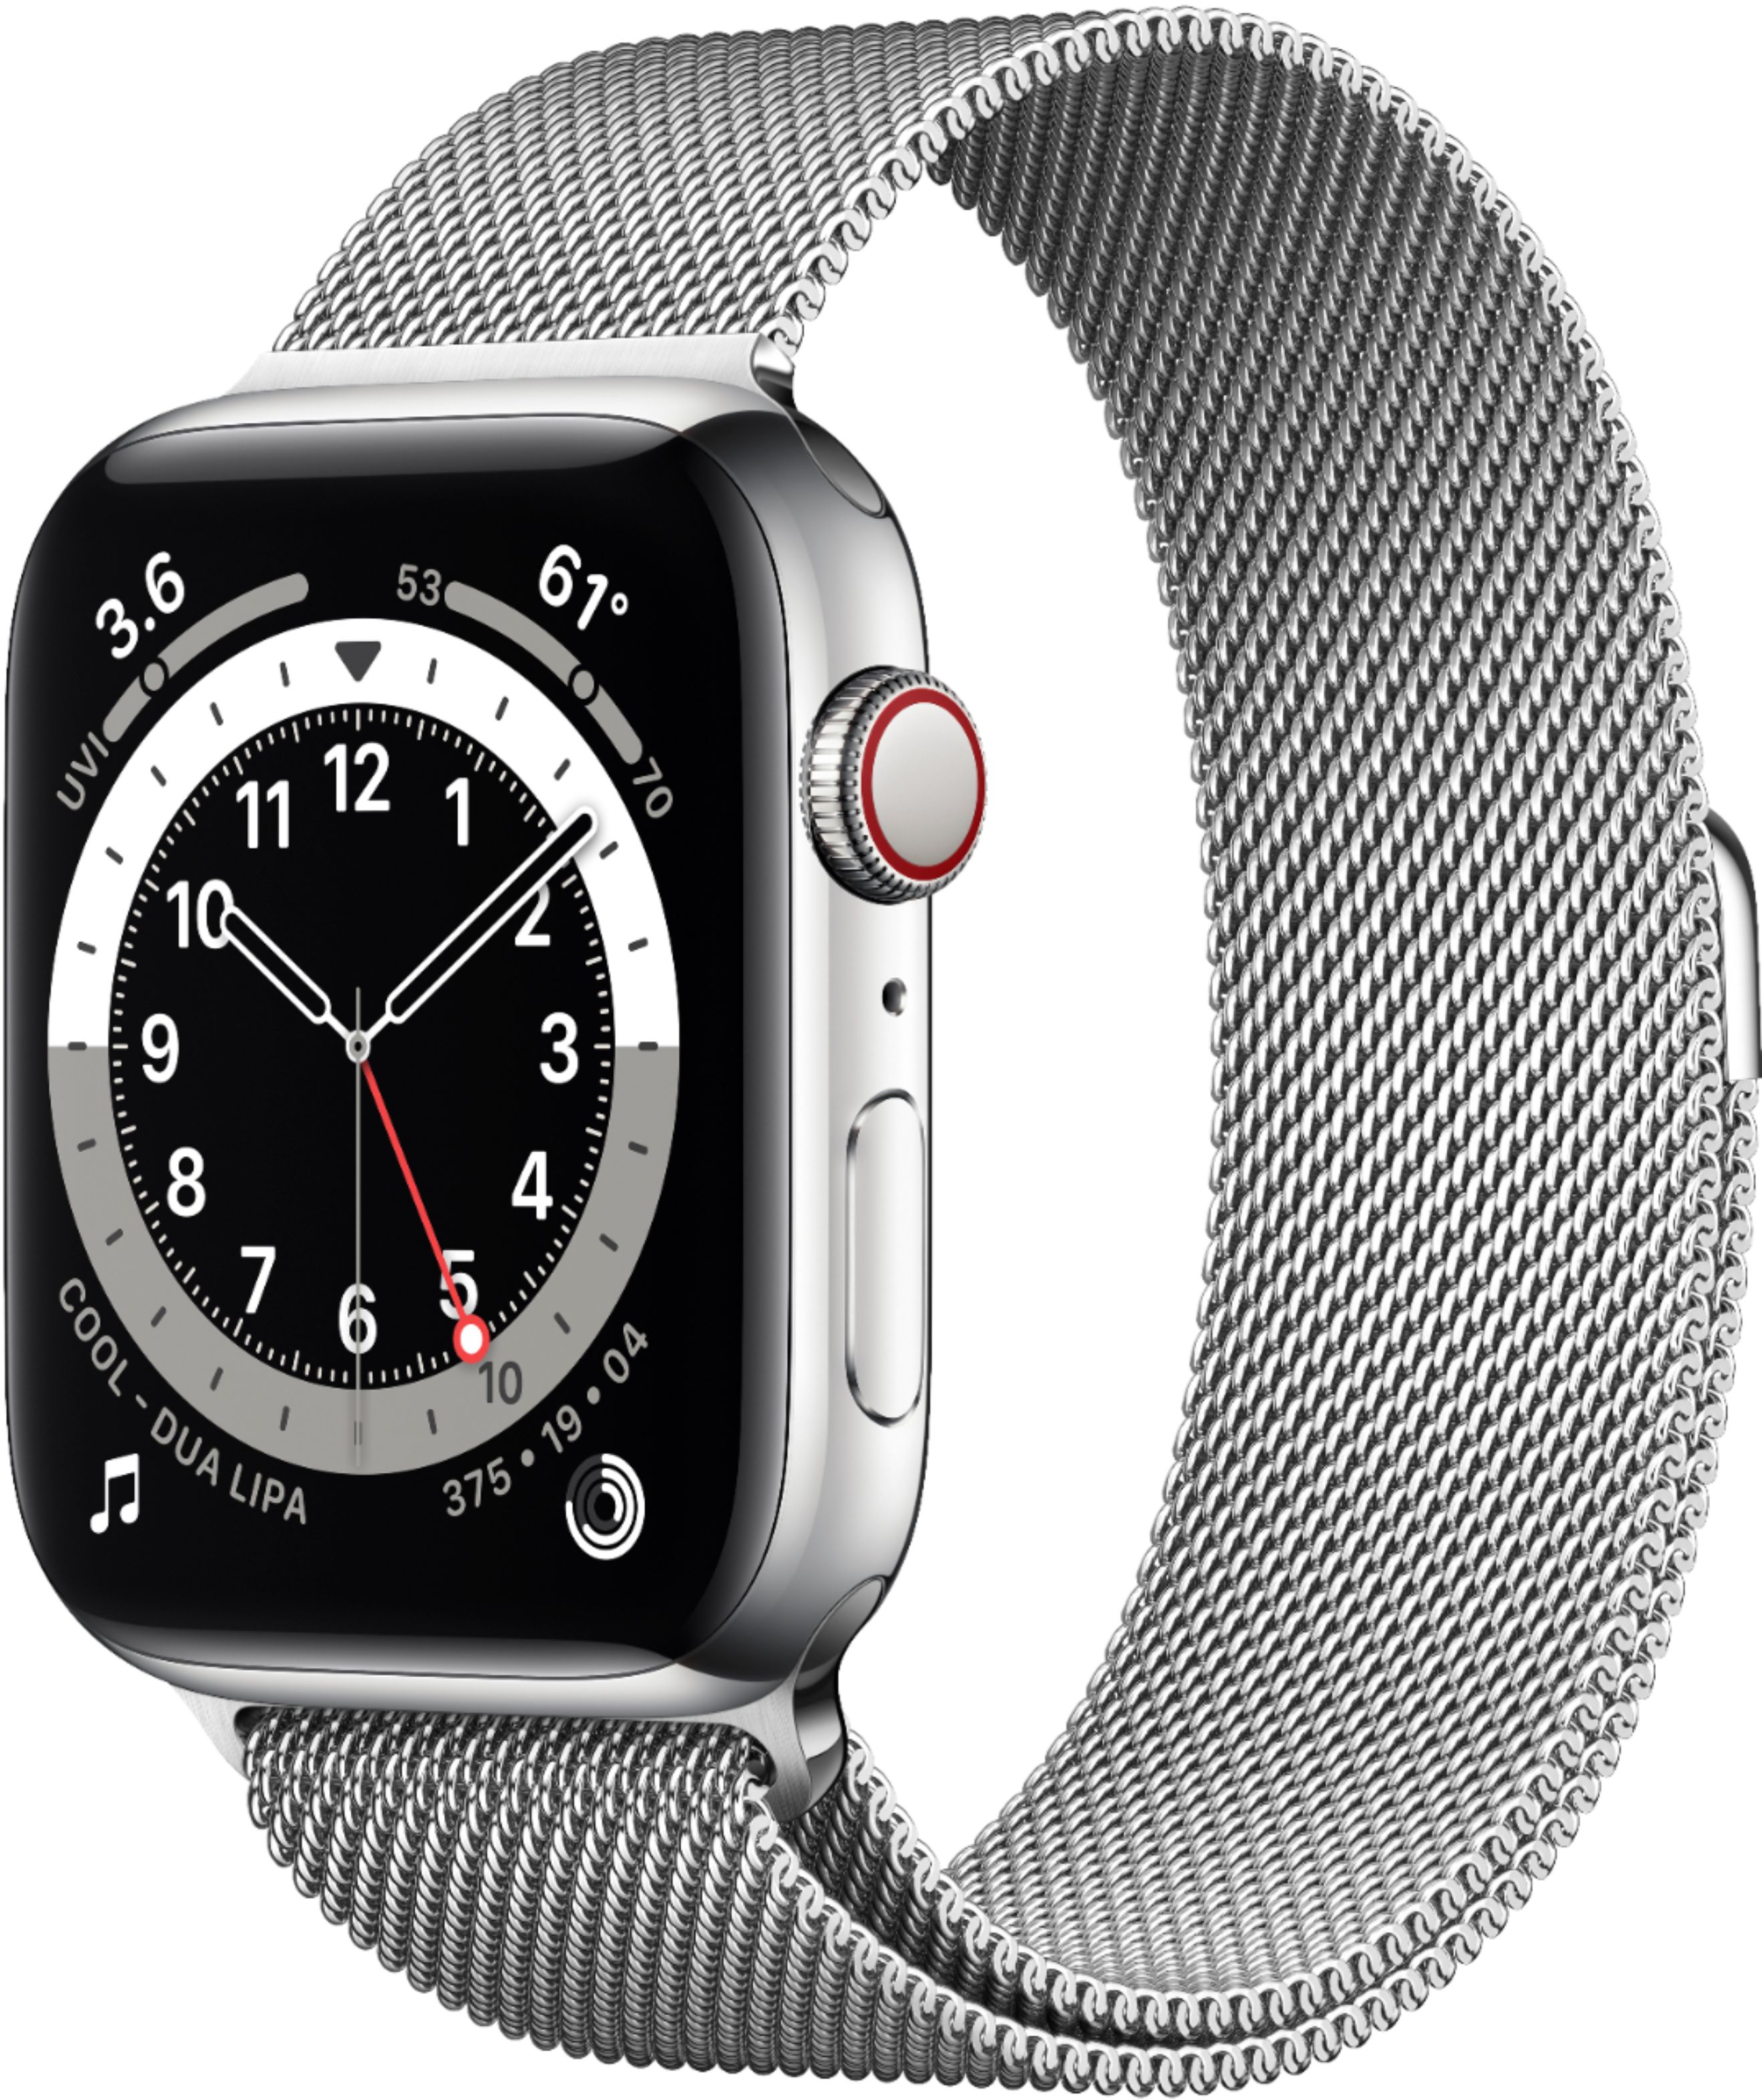 話題の人気 Apple Watch Series 6 44mm グラファイトステンレス 